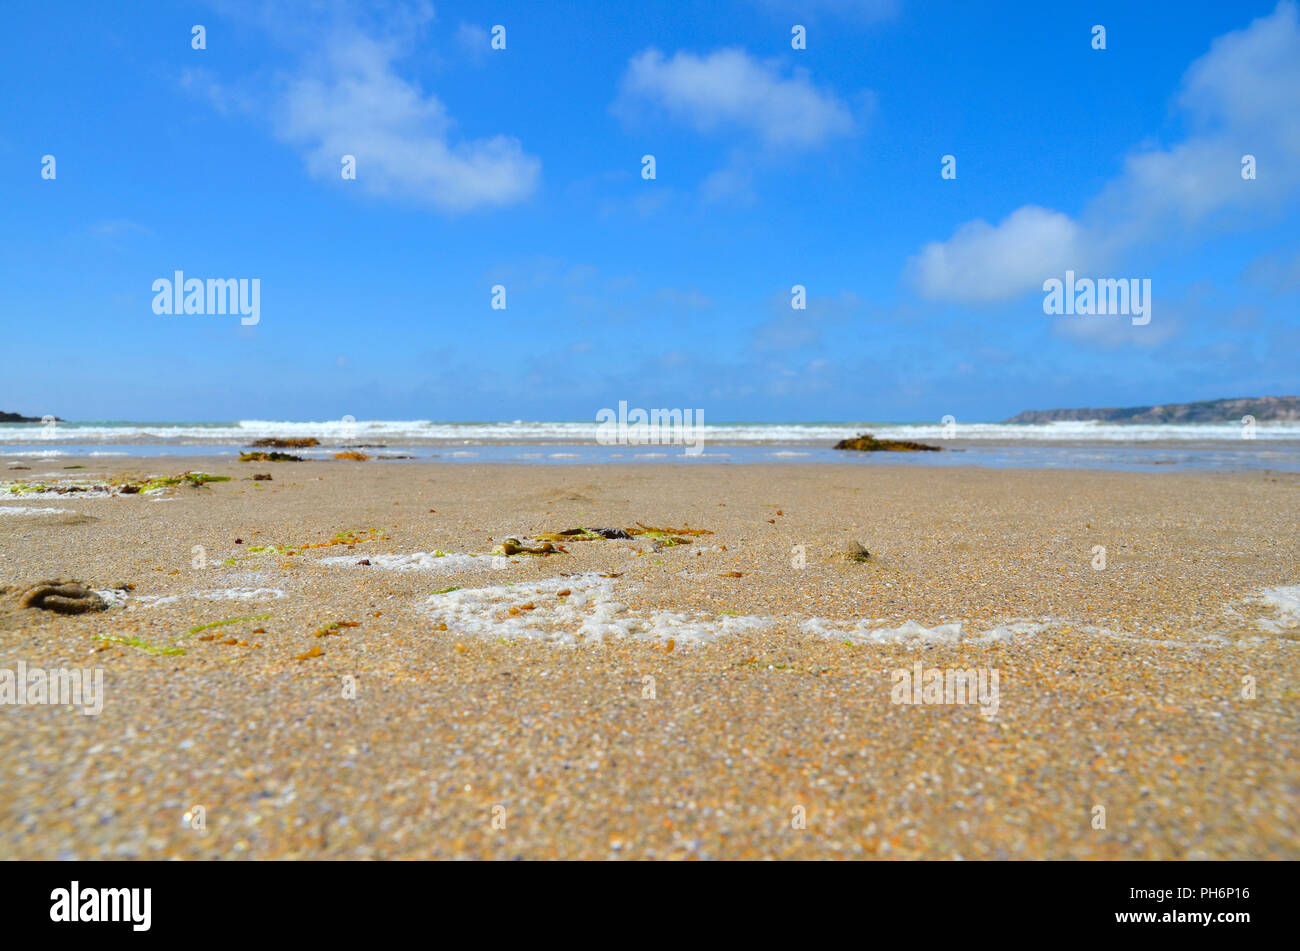 Summer holiday Atlantic sea beach Stock Photo